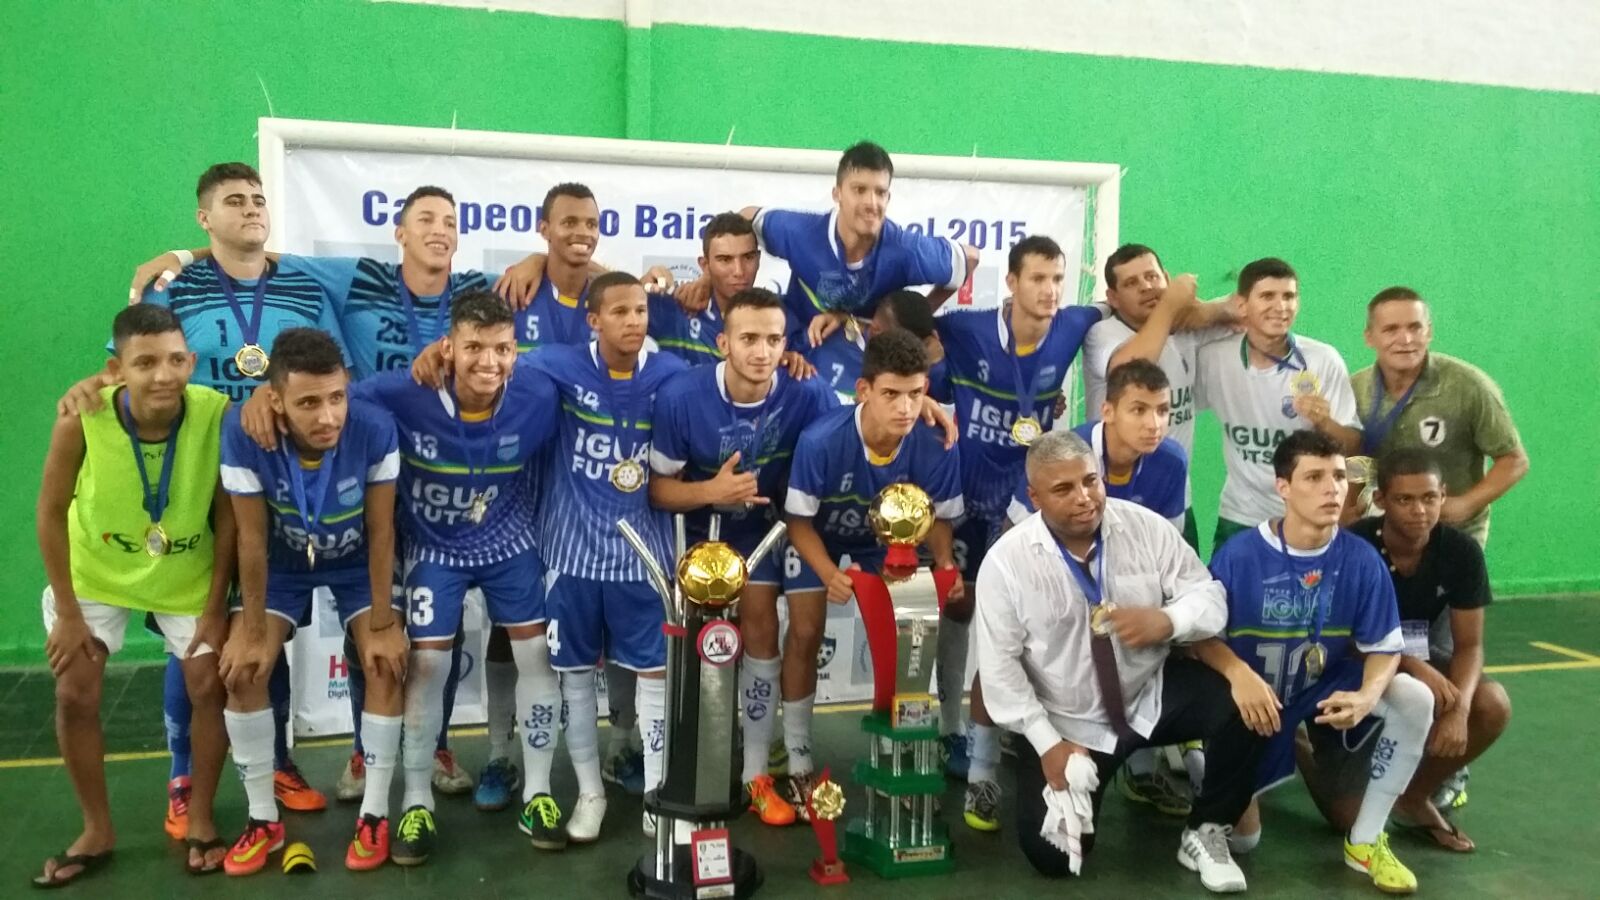 Seleção de Futsal de Iguaí